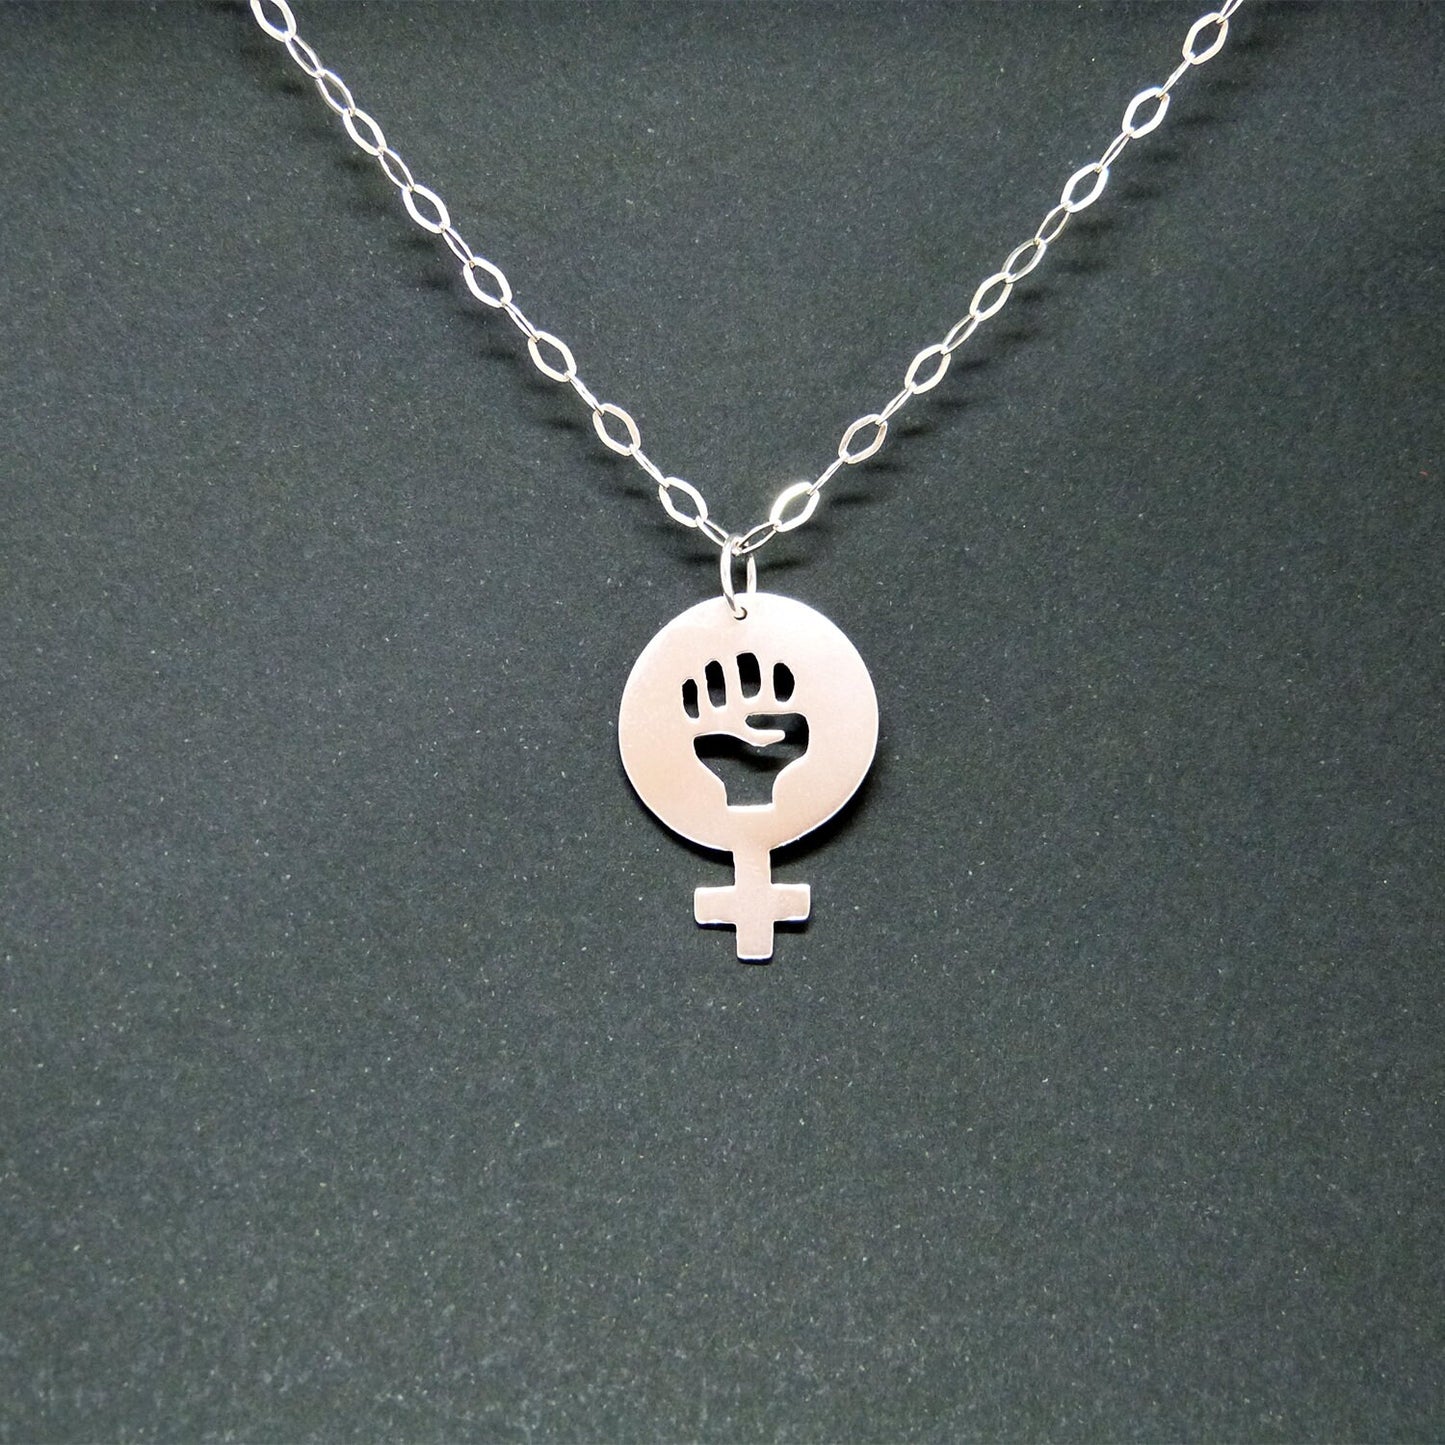 Women Power 02 pendant in 925 silver